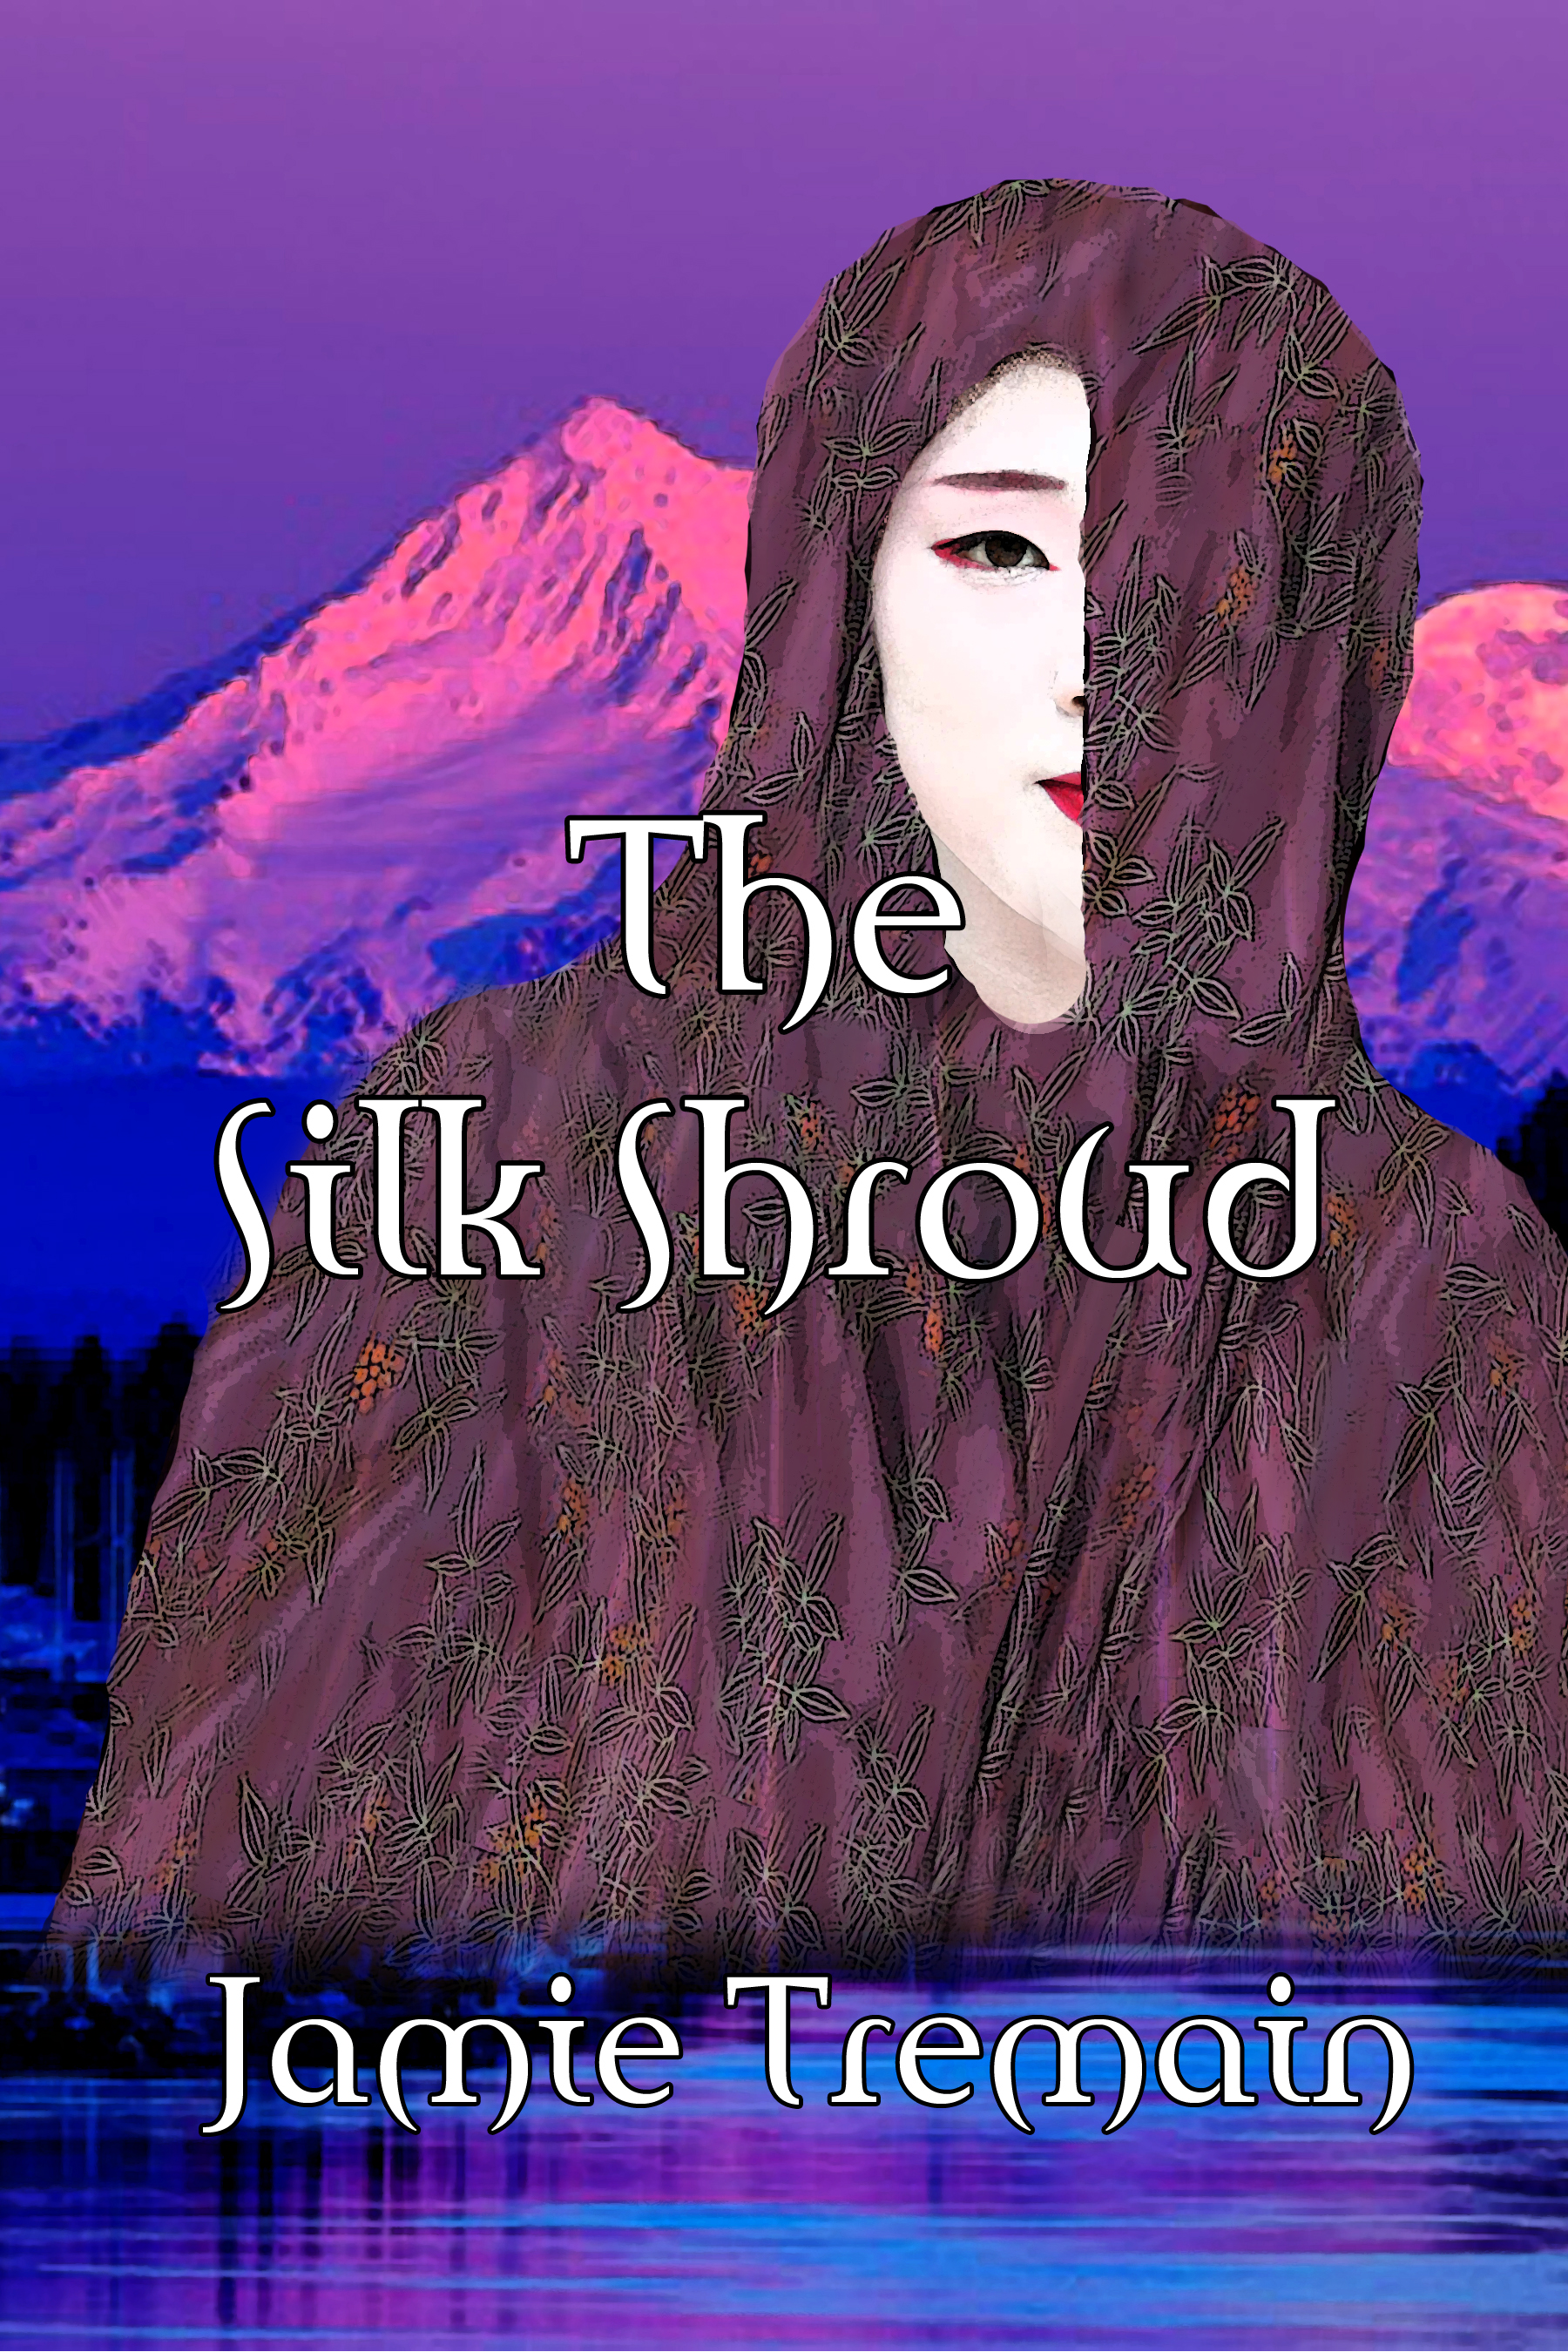 The Silk Shroud